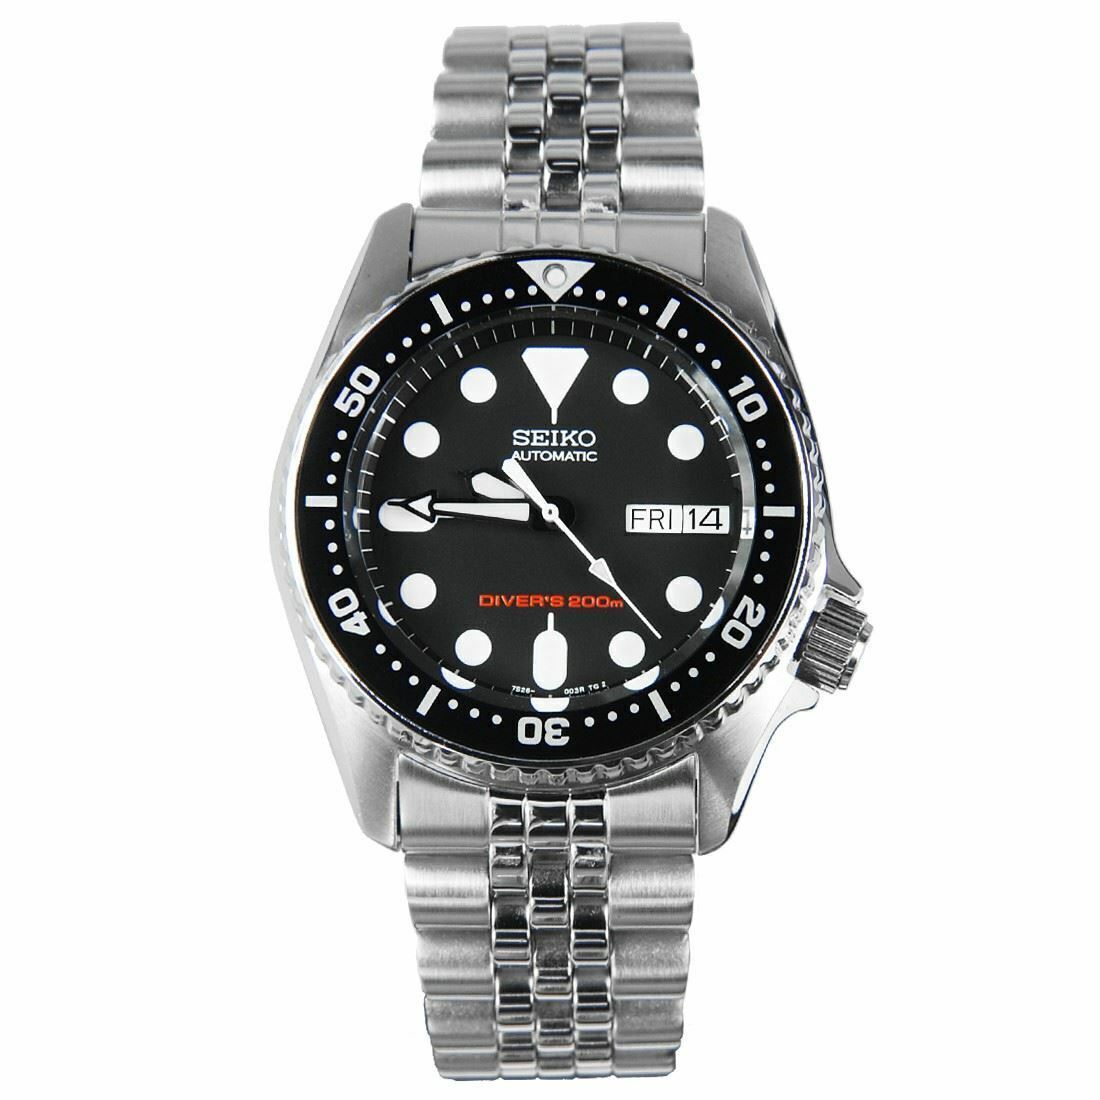 Seiko Black Unisex Adult Watch - SKX013 for sale online | eBay